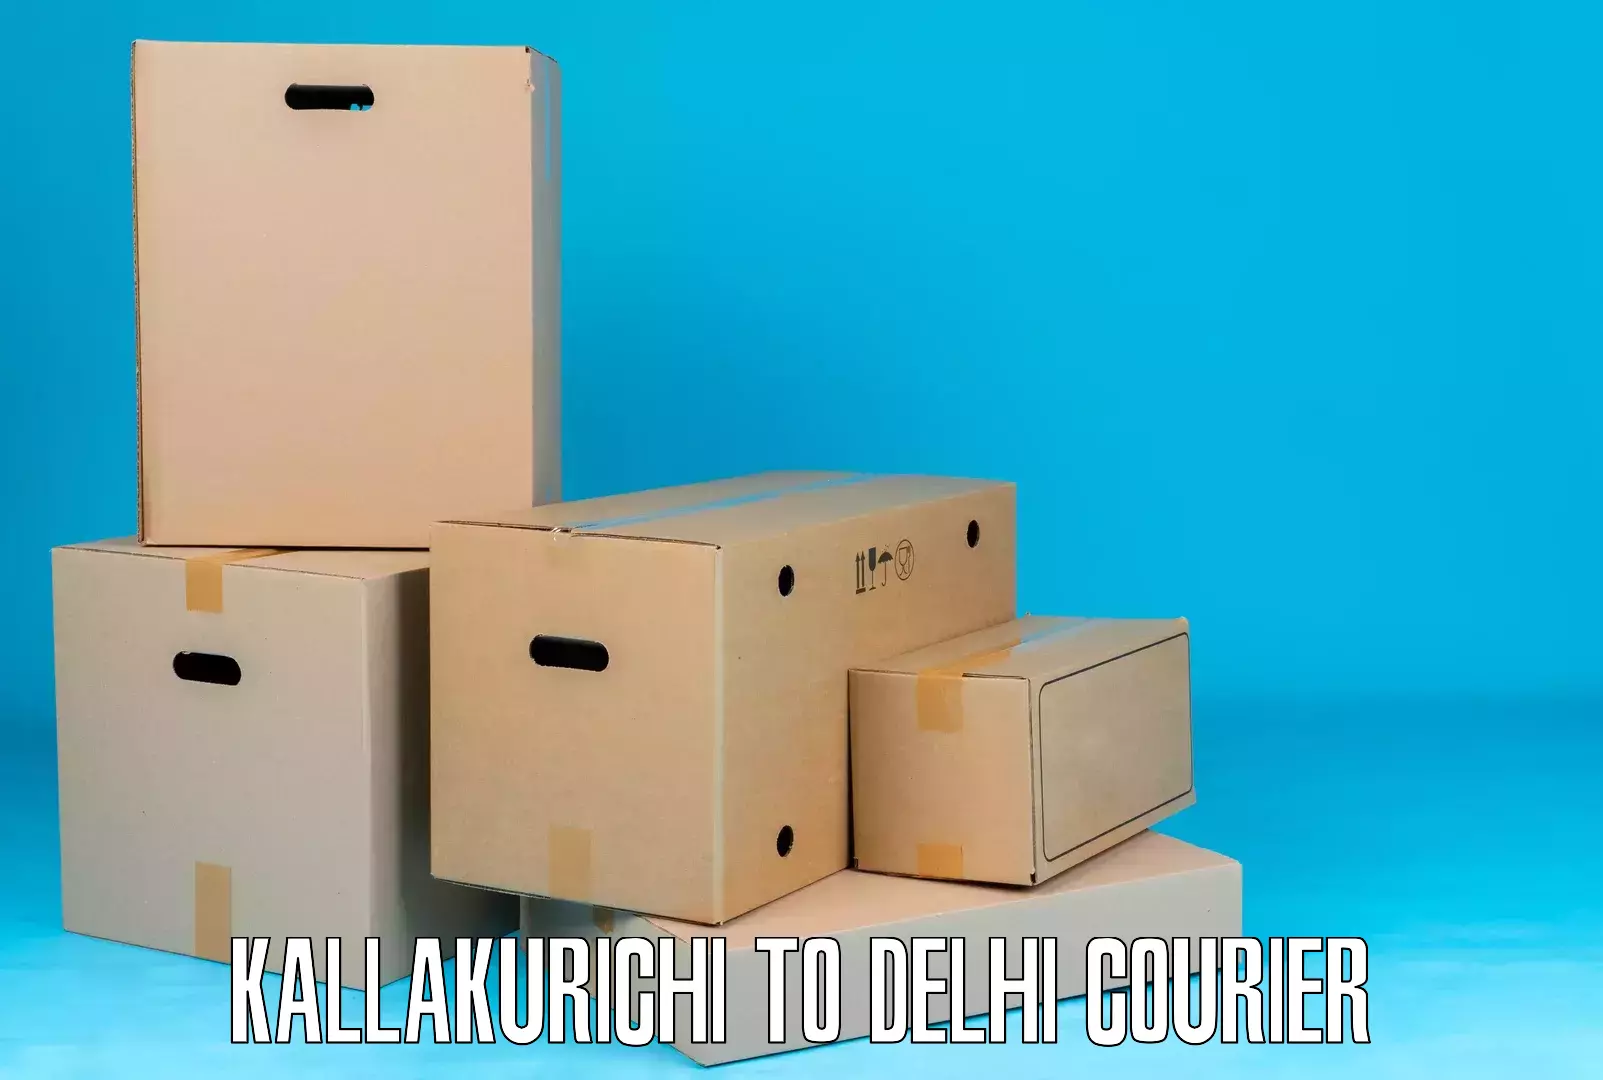 Sustainable courier practices Kallakurichi to Krishna Nagar